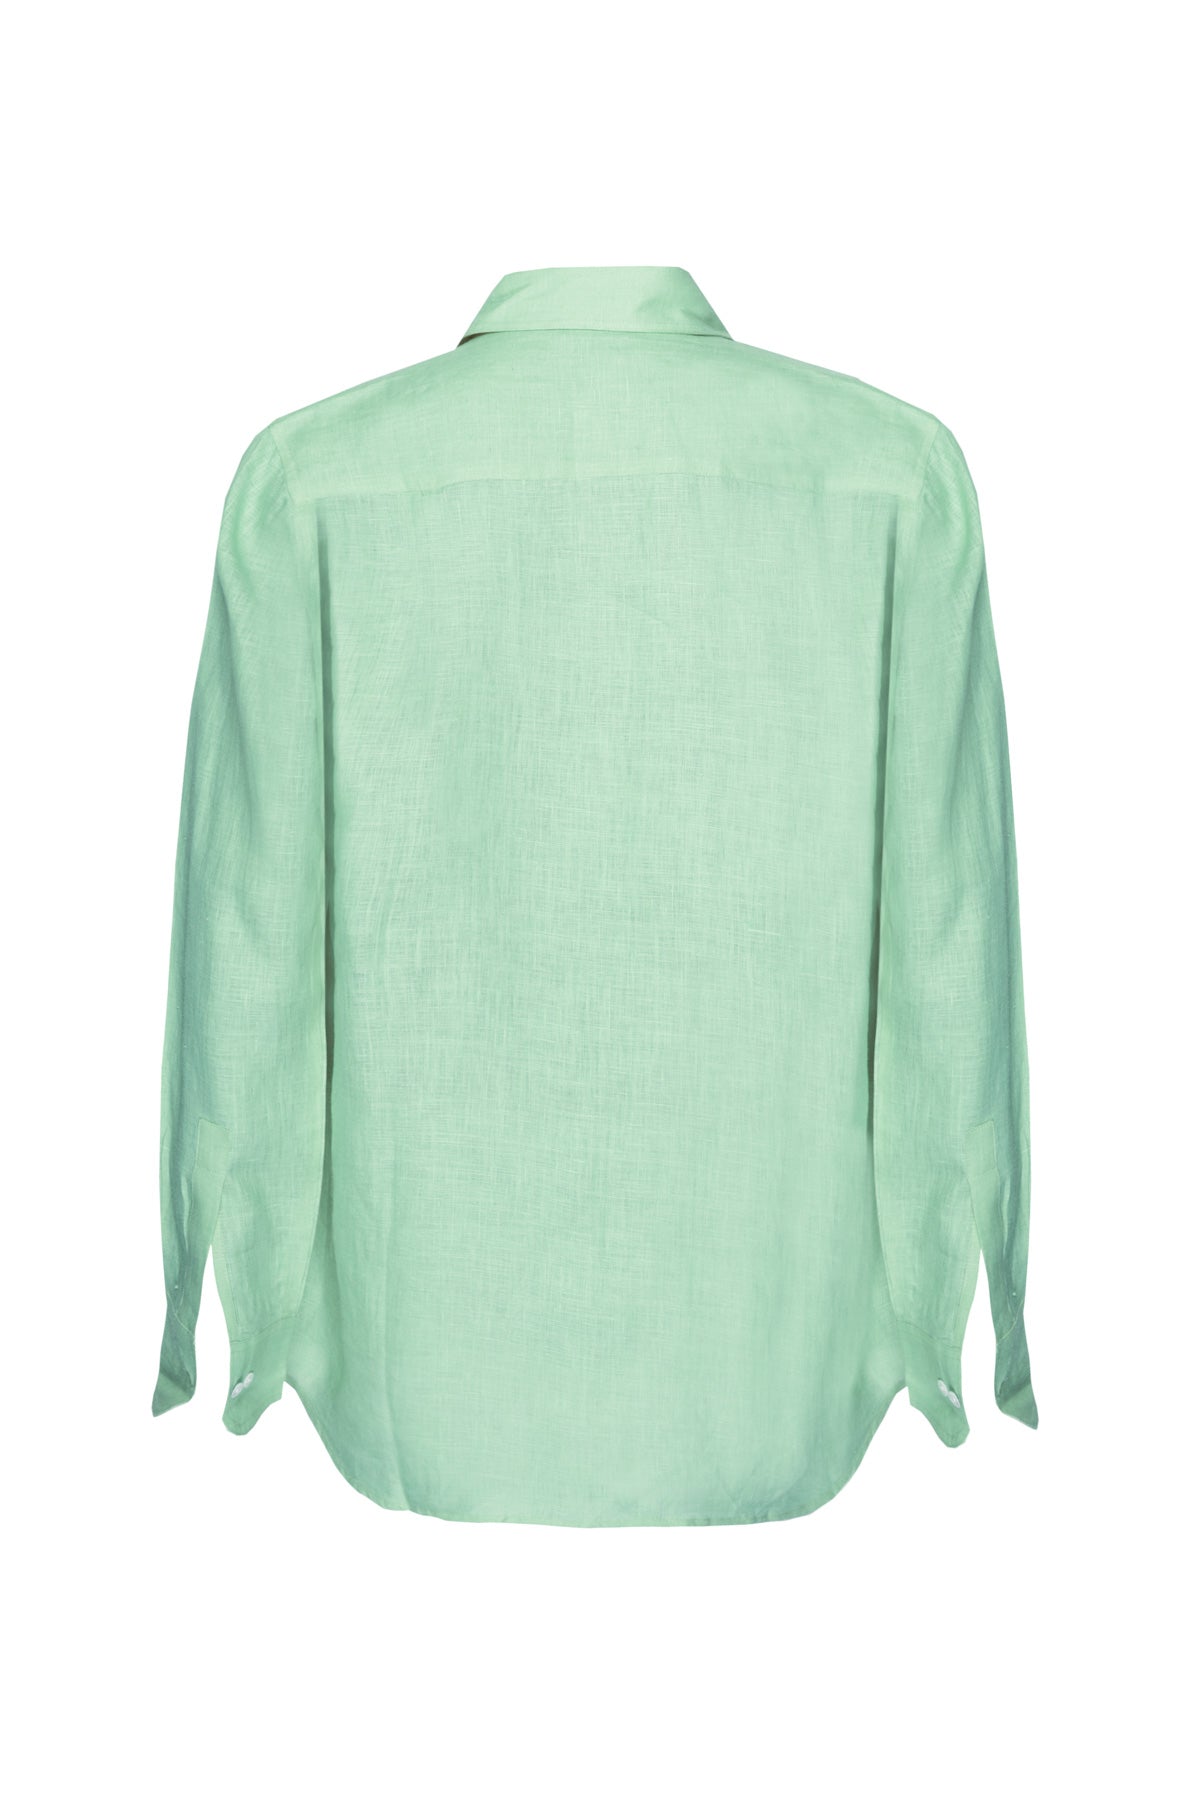 Classic Linen Shirt - Mint Green